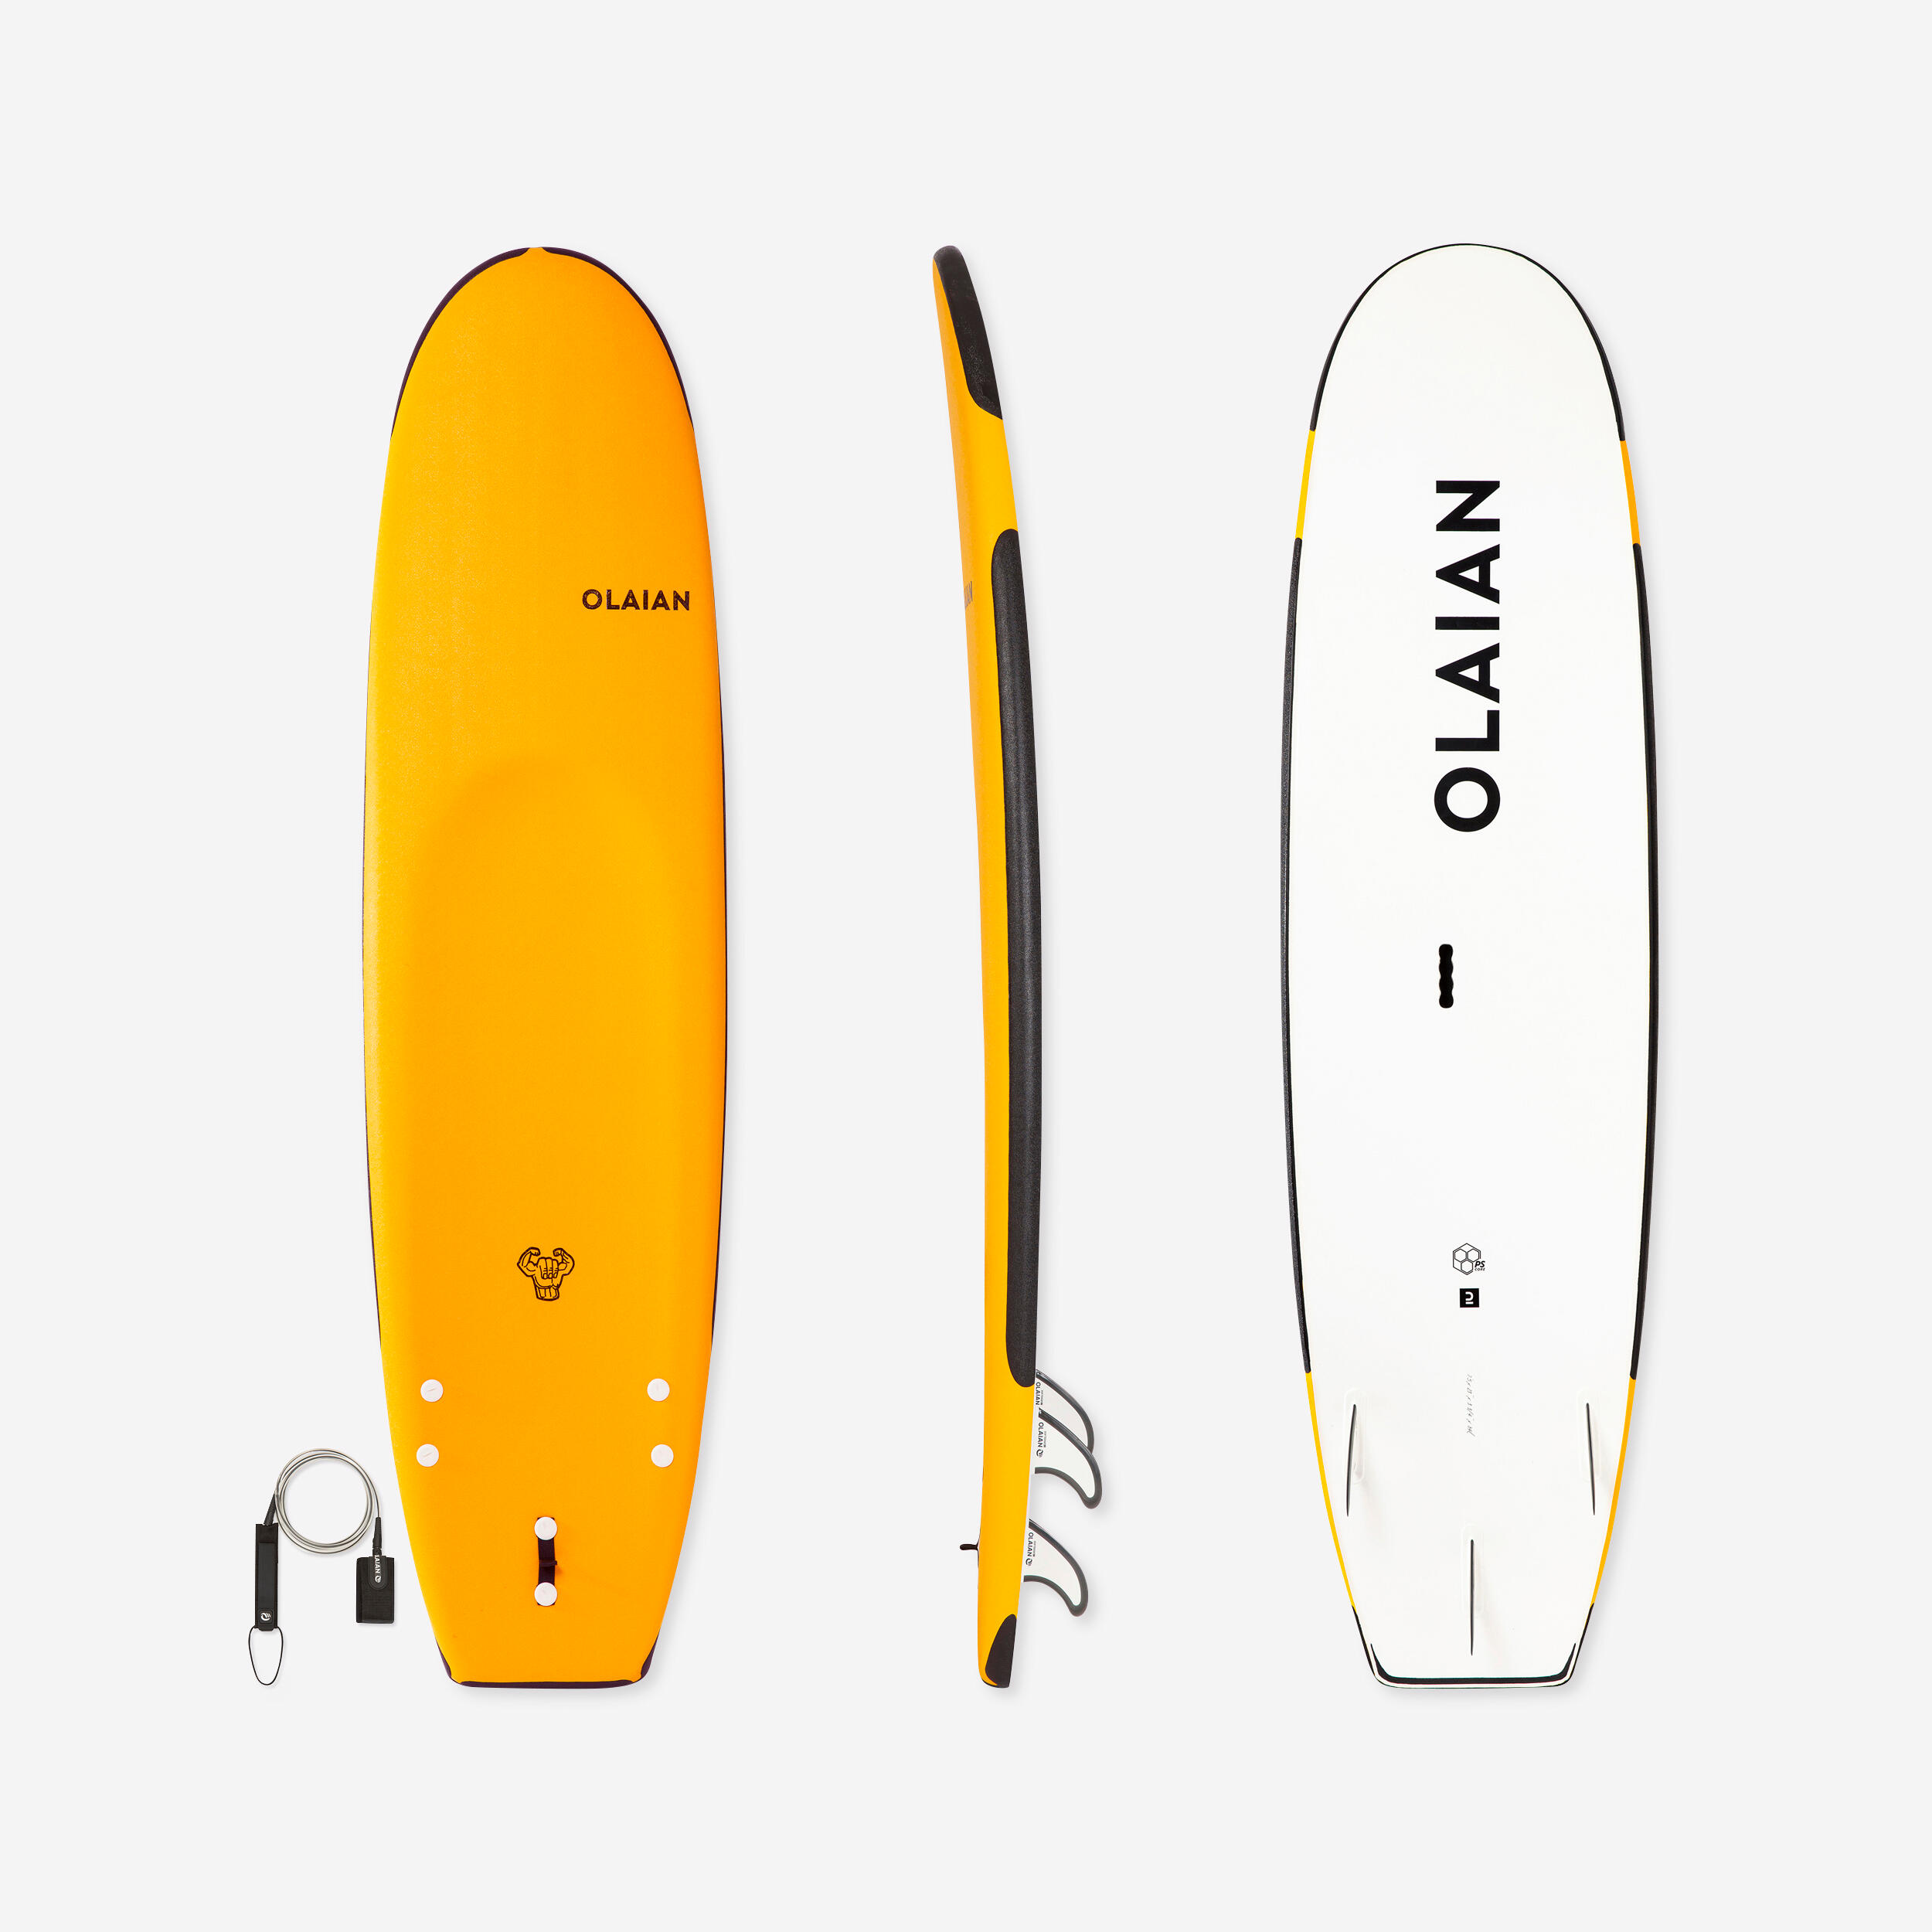 OLAIAN FOAM SURFBOARD 100 Reinforced 7'5" 84 L + Leash